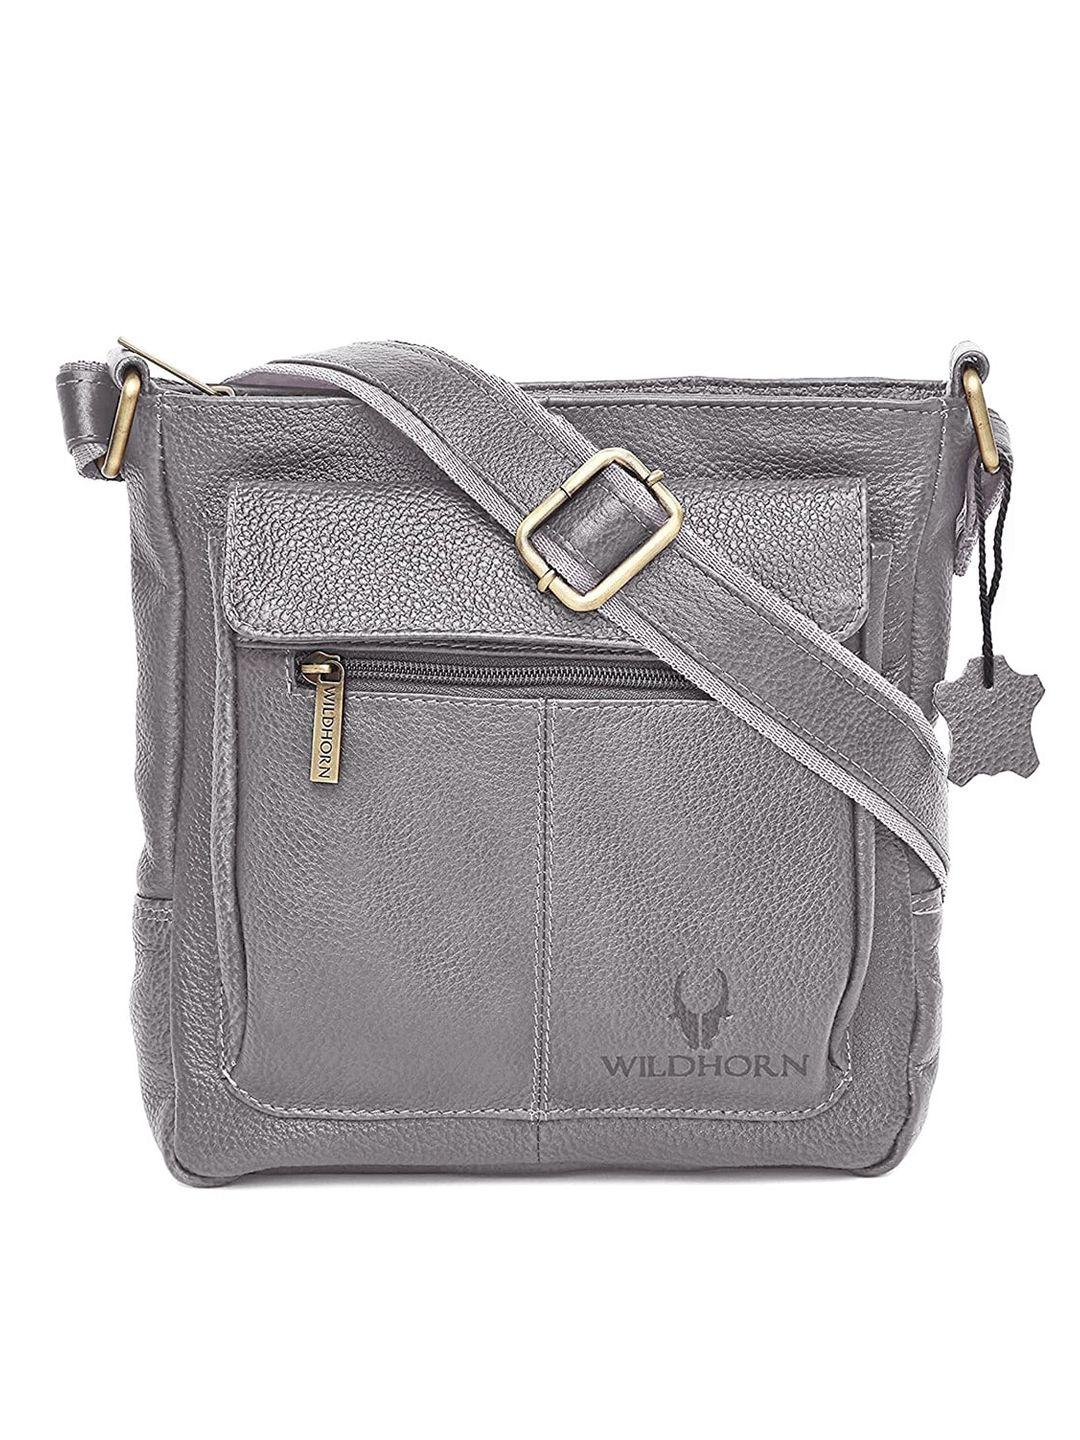 wildhorn grey leather structured sling bag